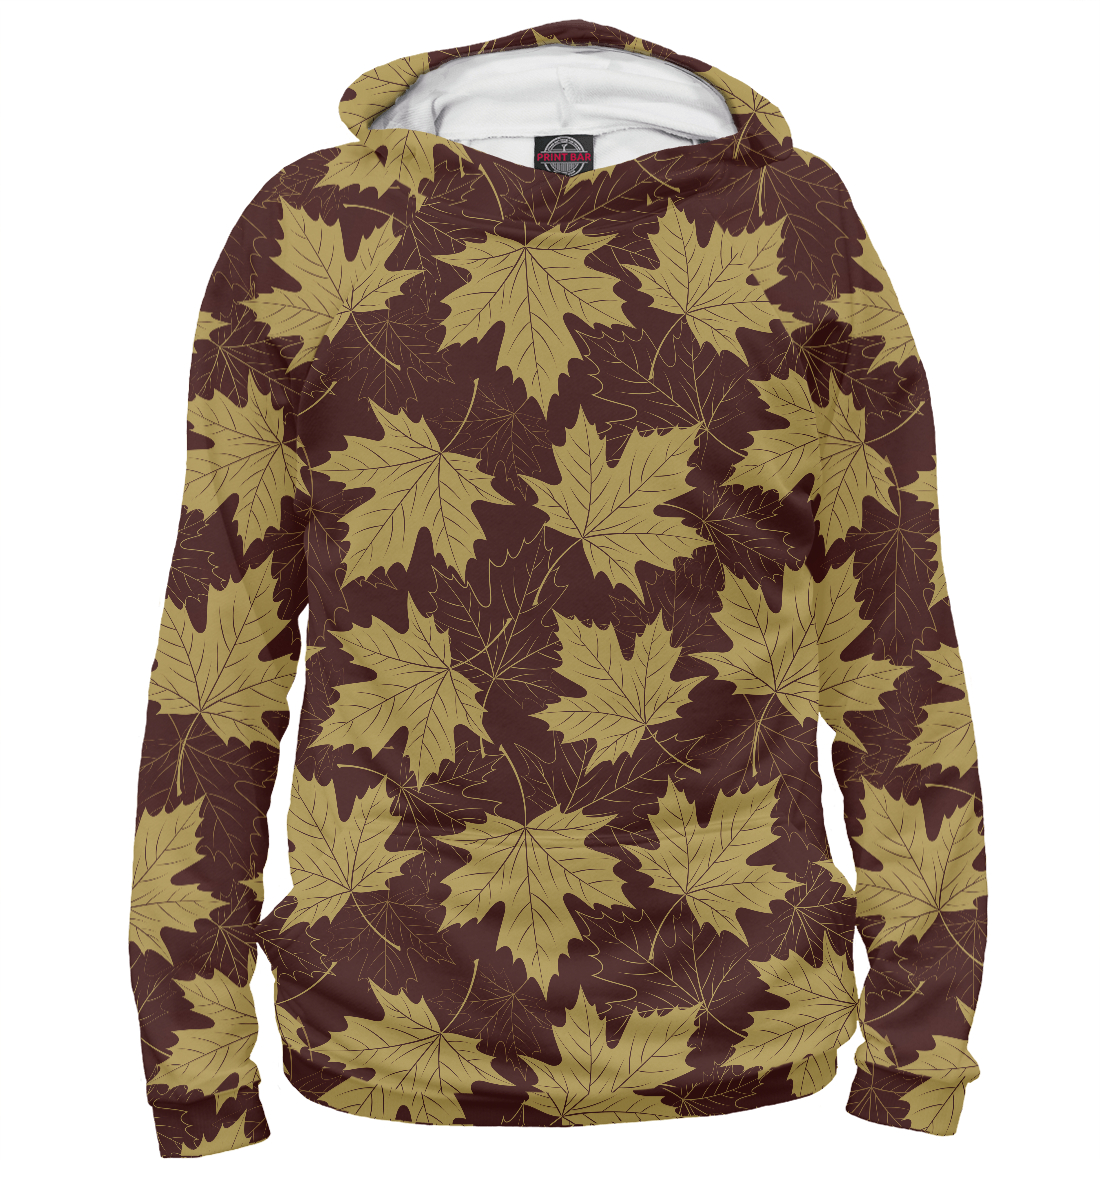 Мужской Худи с принтом Осенние листы (коричневый фон), артикул LST-603883-hud-2mp